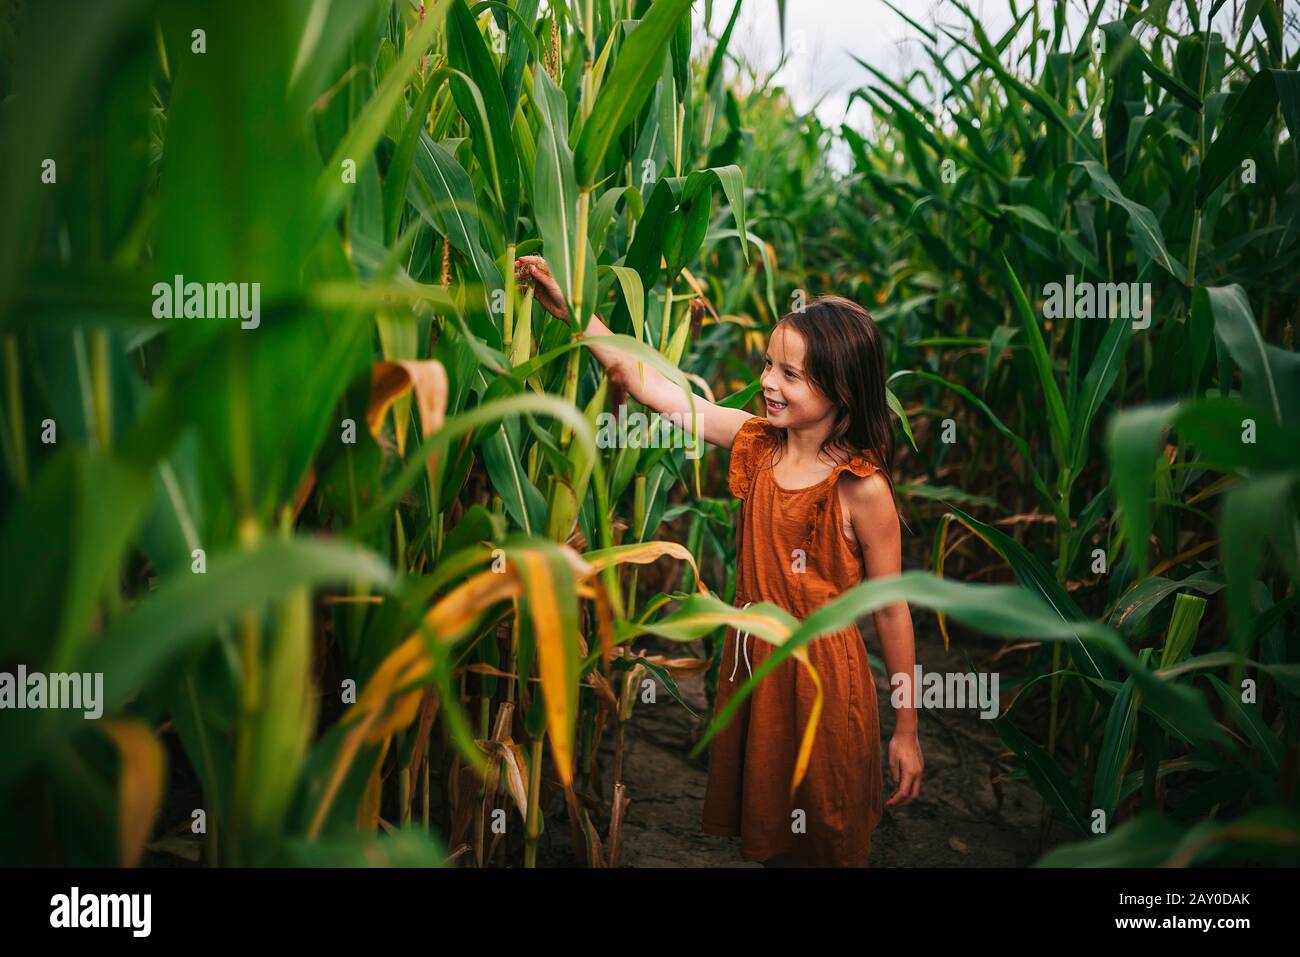 Porträt eines Mädchens in einem Maisfeld, das eine Pflanze berührt, USA Stockfoto